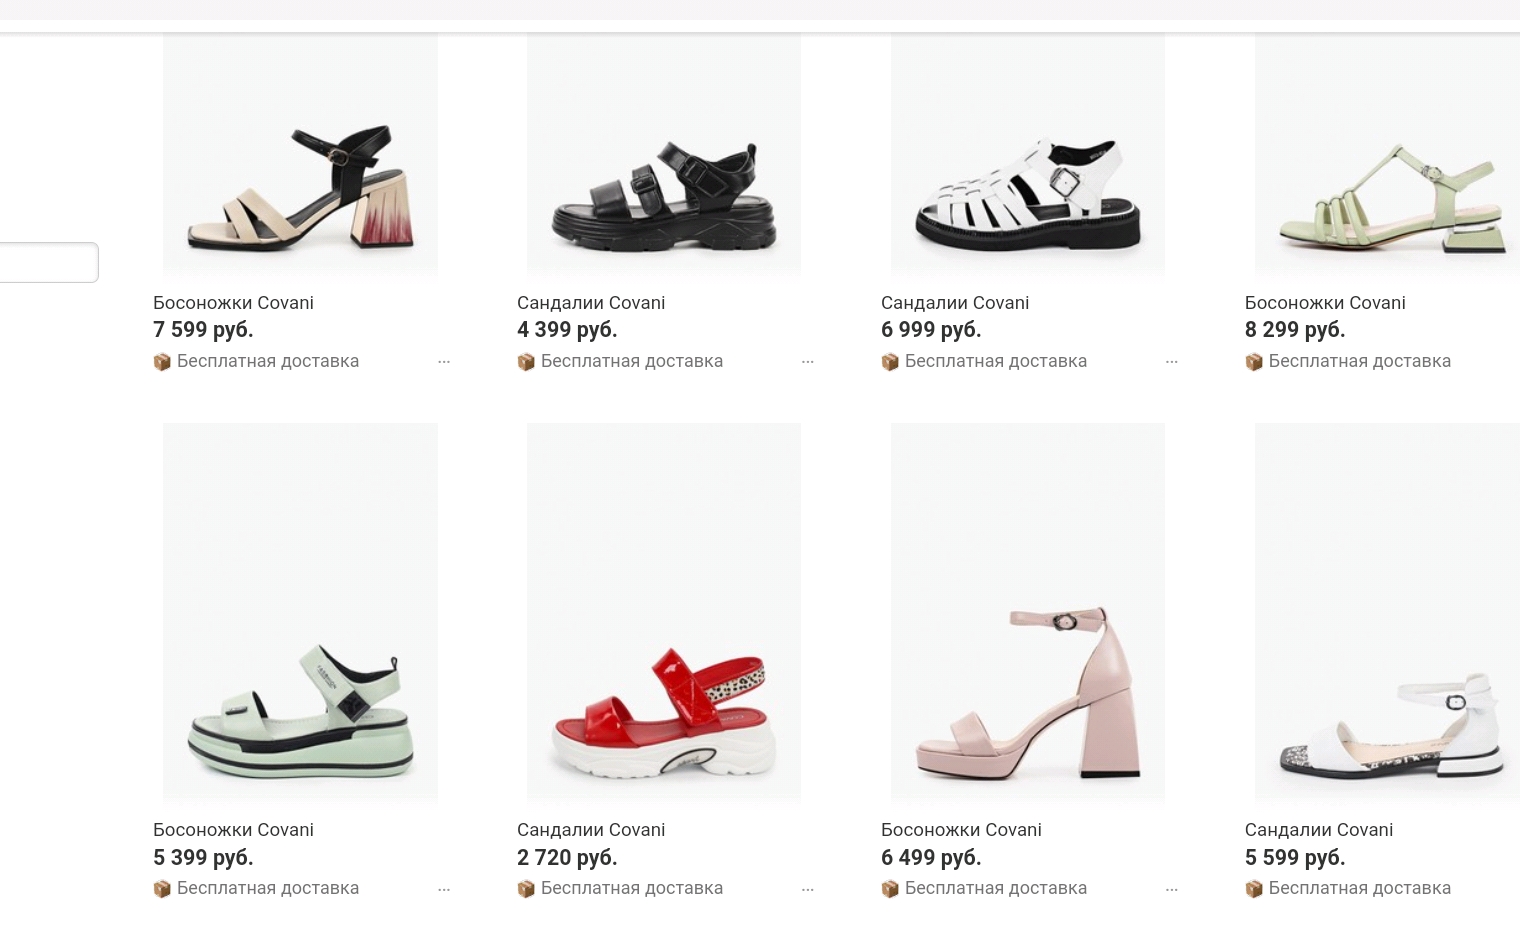 Covani — первый бренд из обзора, у которого я увидела красные сандалии